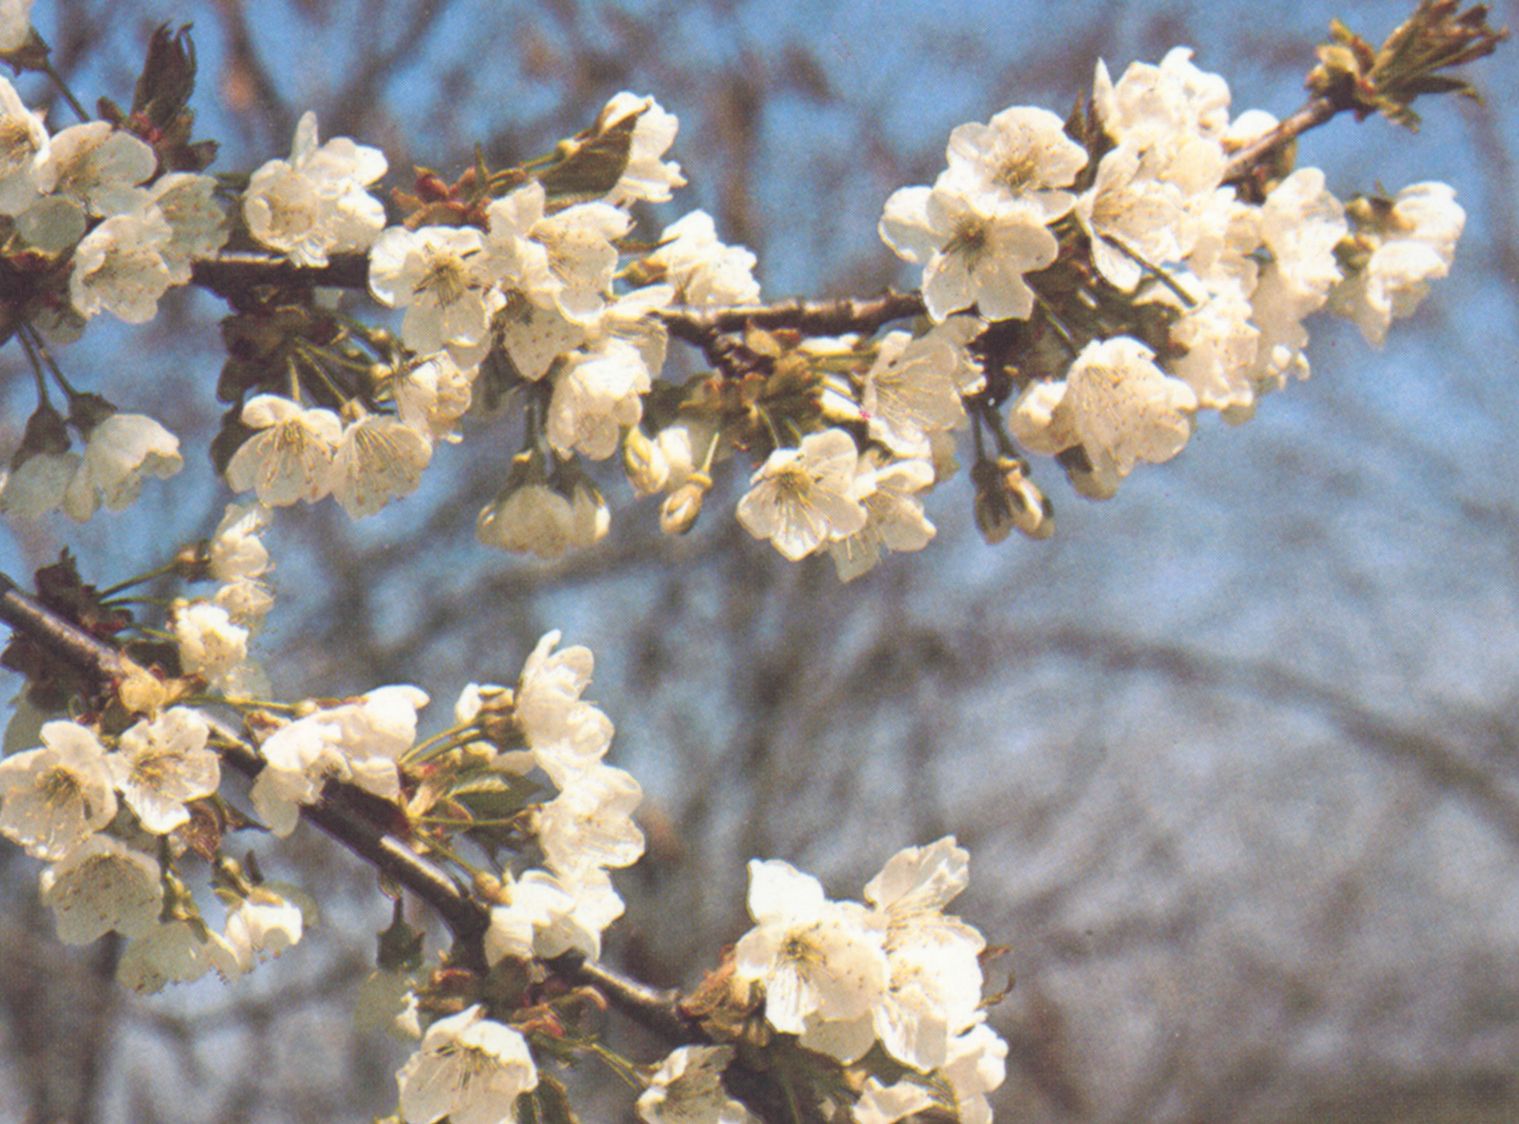 Cvijet trešnje vjekovima je popularan u Japanu